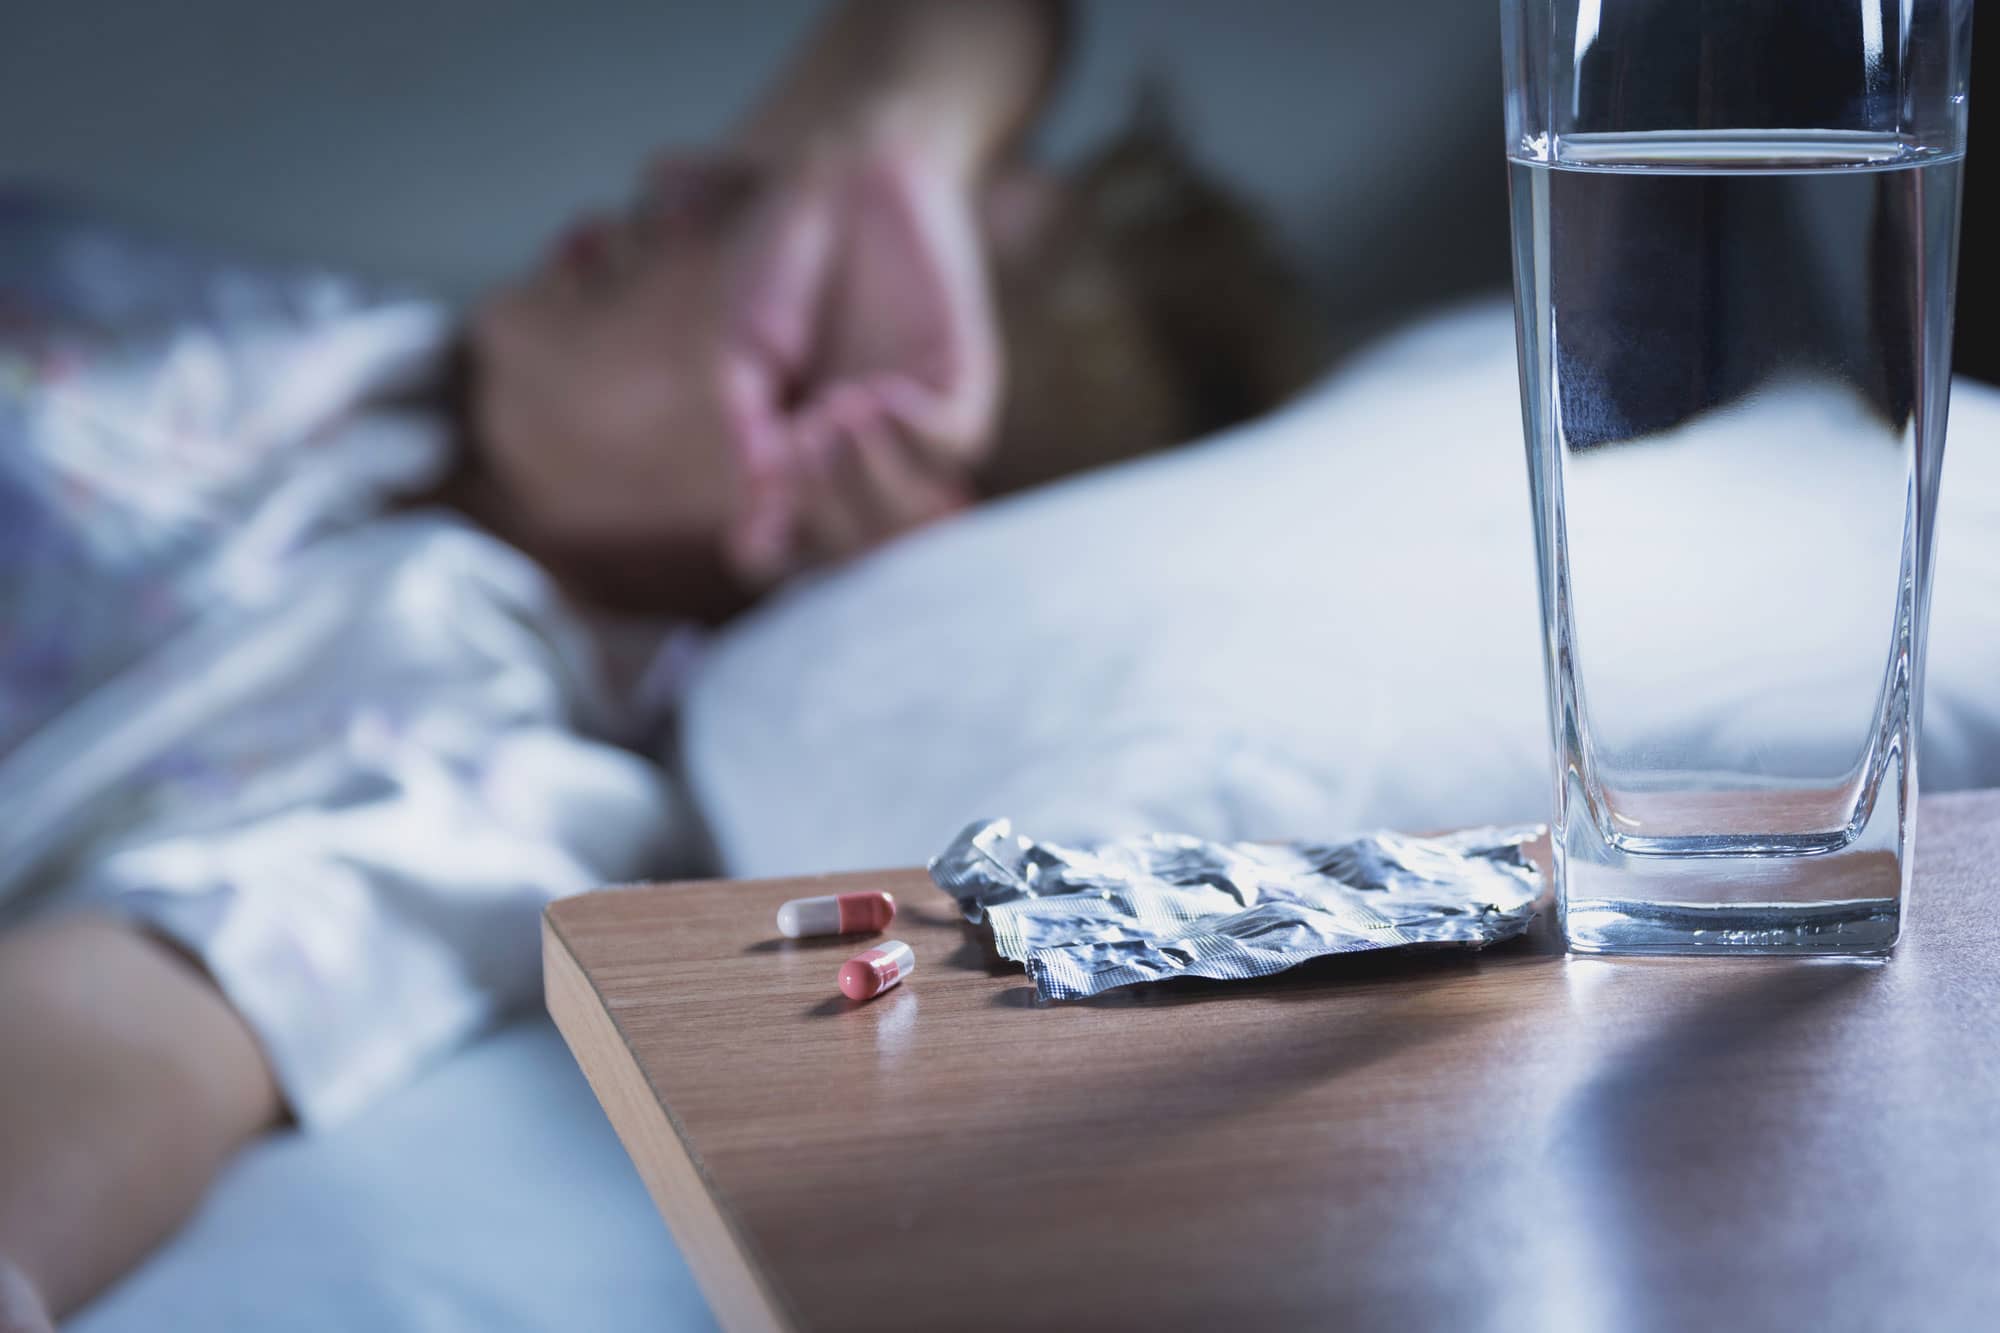 Thuốc chẹn beta gây ra rối loạn giấc ngủ, khó thở tức ngực ở người bệnh